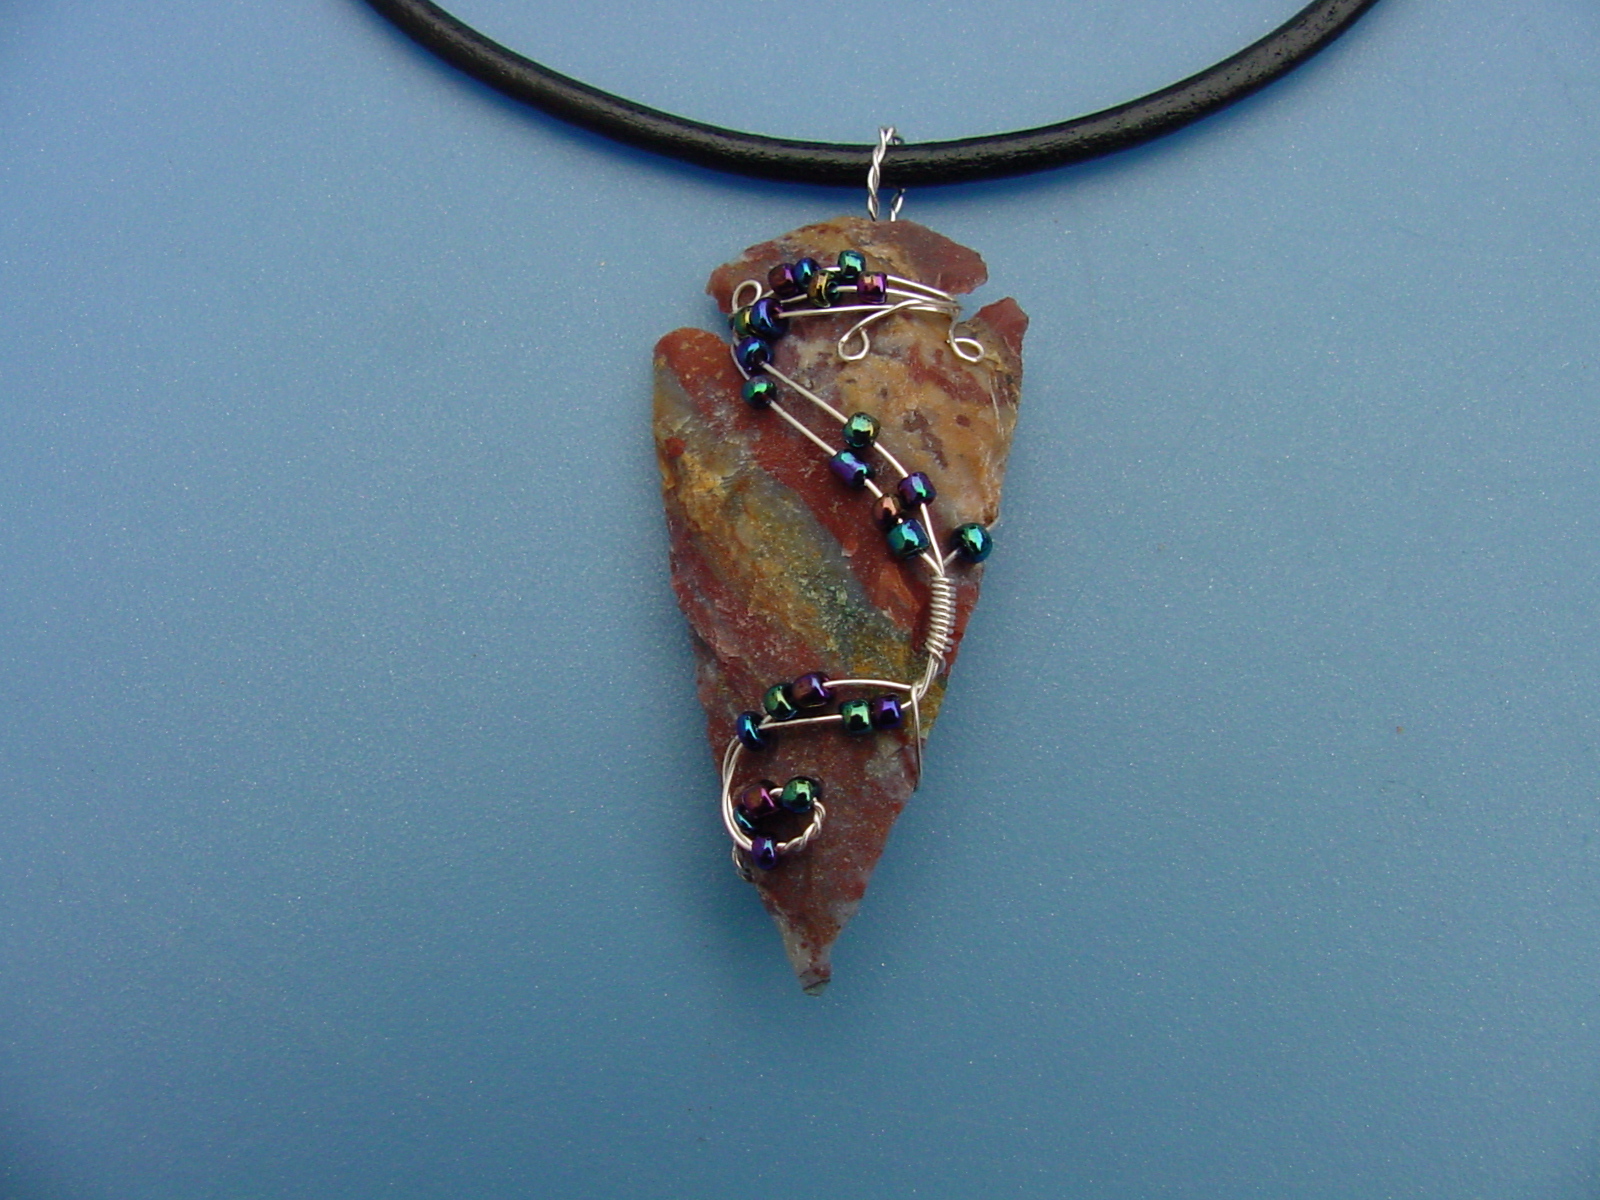 2 1/4" arrowhead custom reproduction arrowhead necklace wrn60